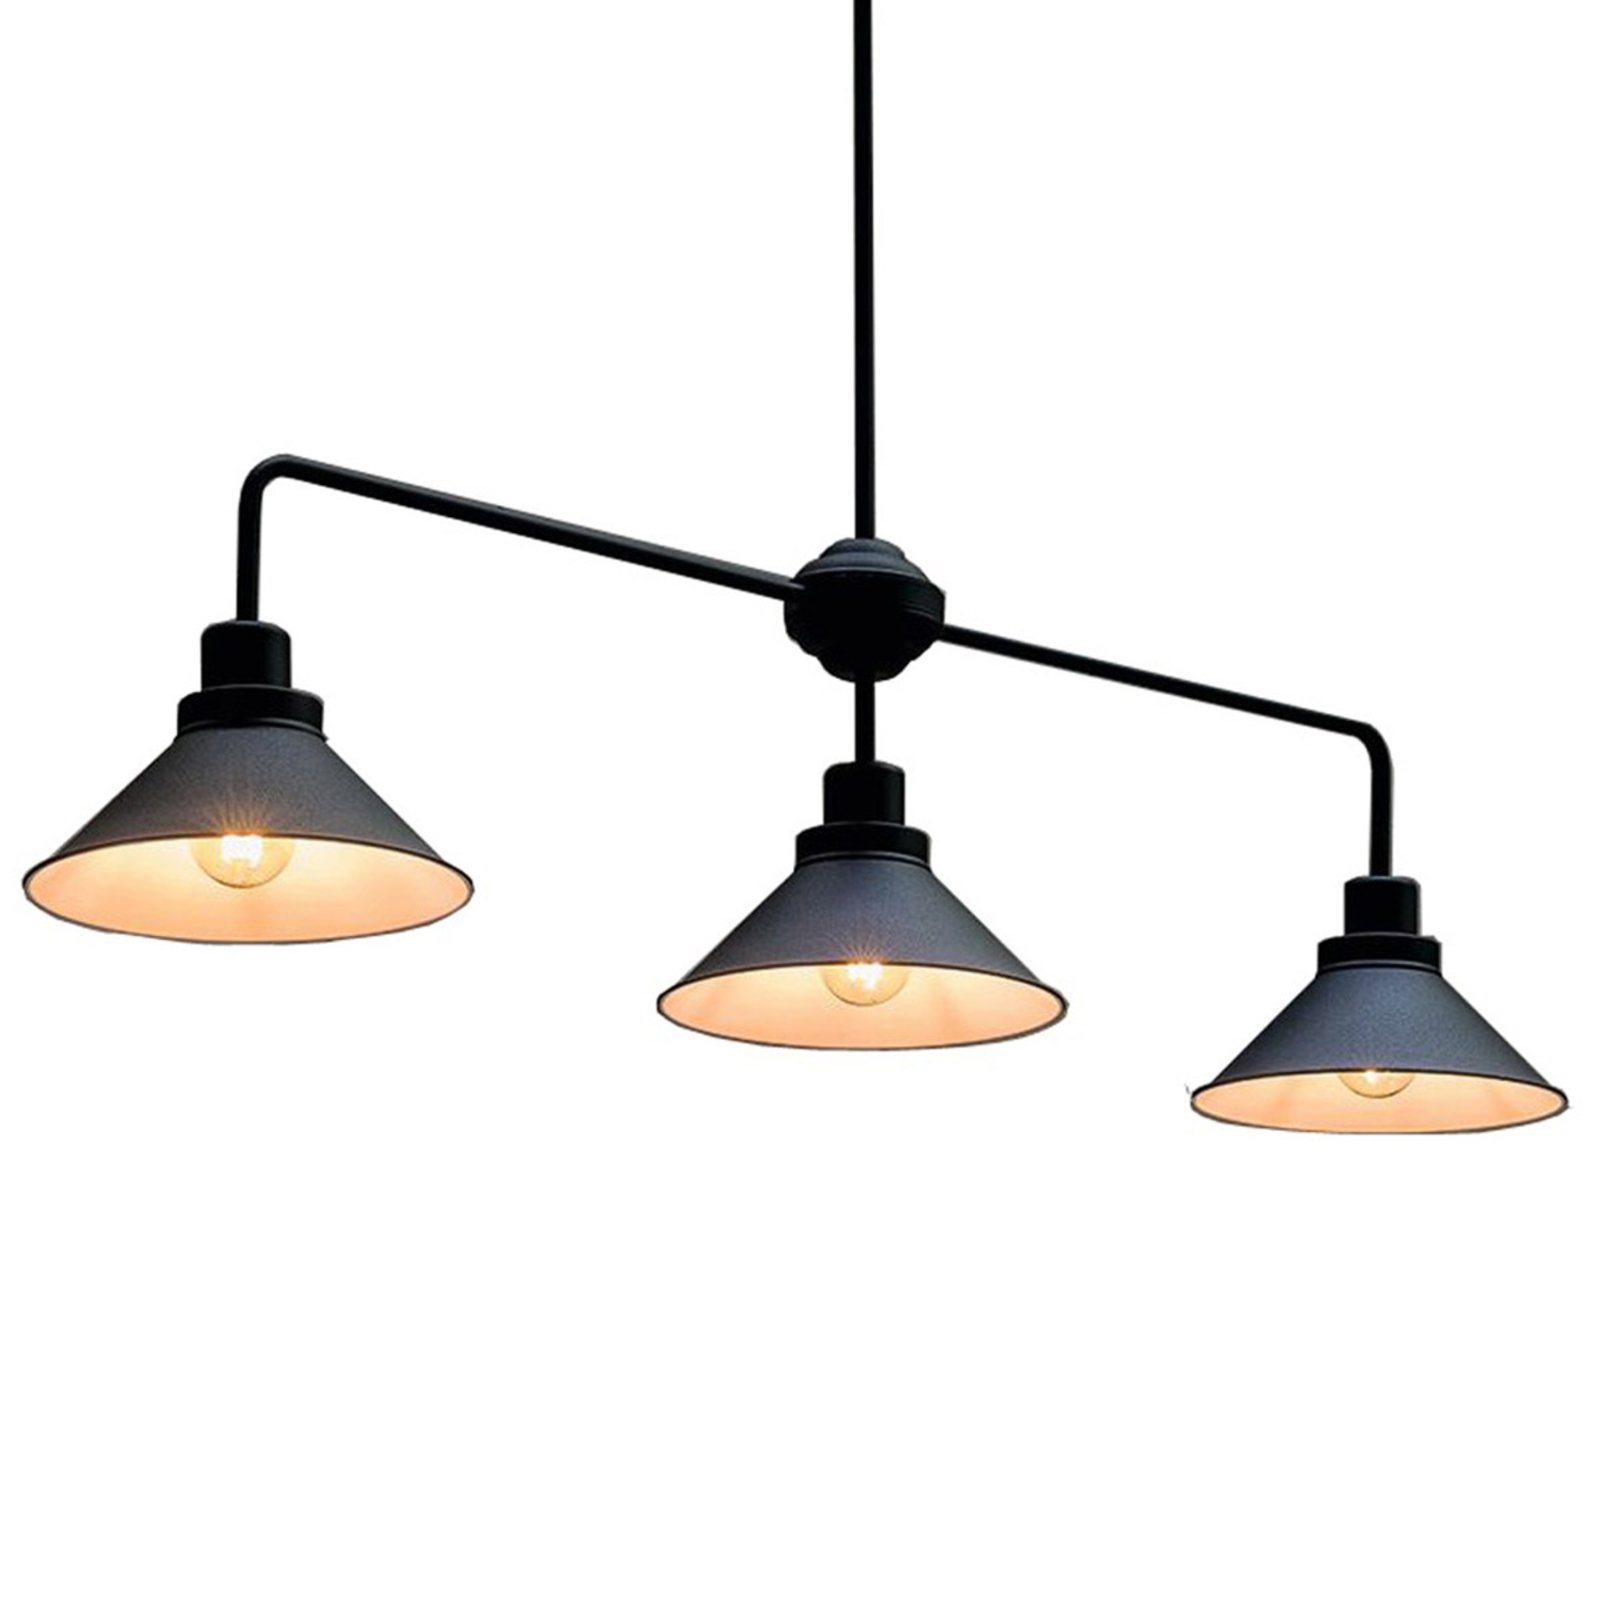 Viseće svjetlo Craft III u crnoj boji, s tri žarulje